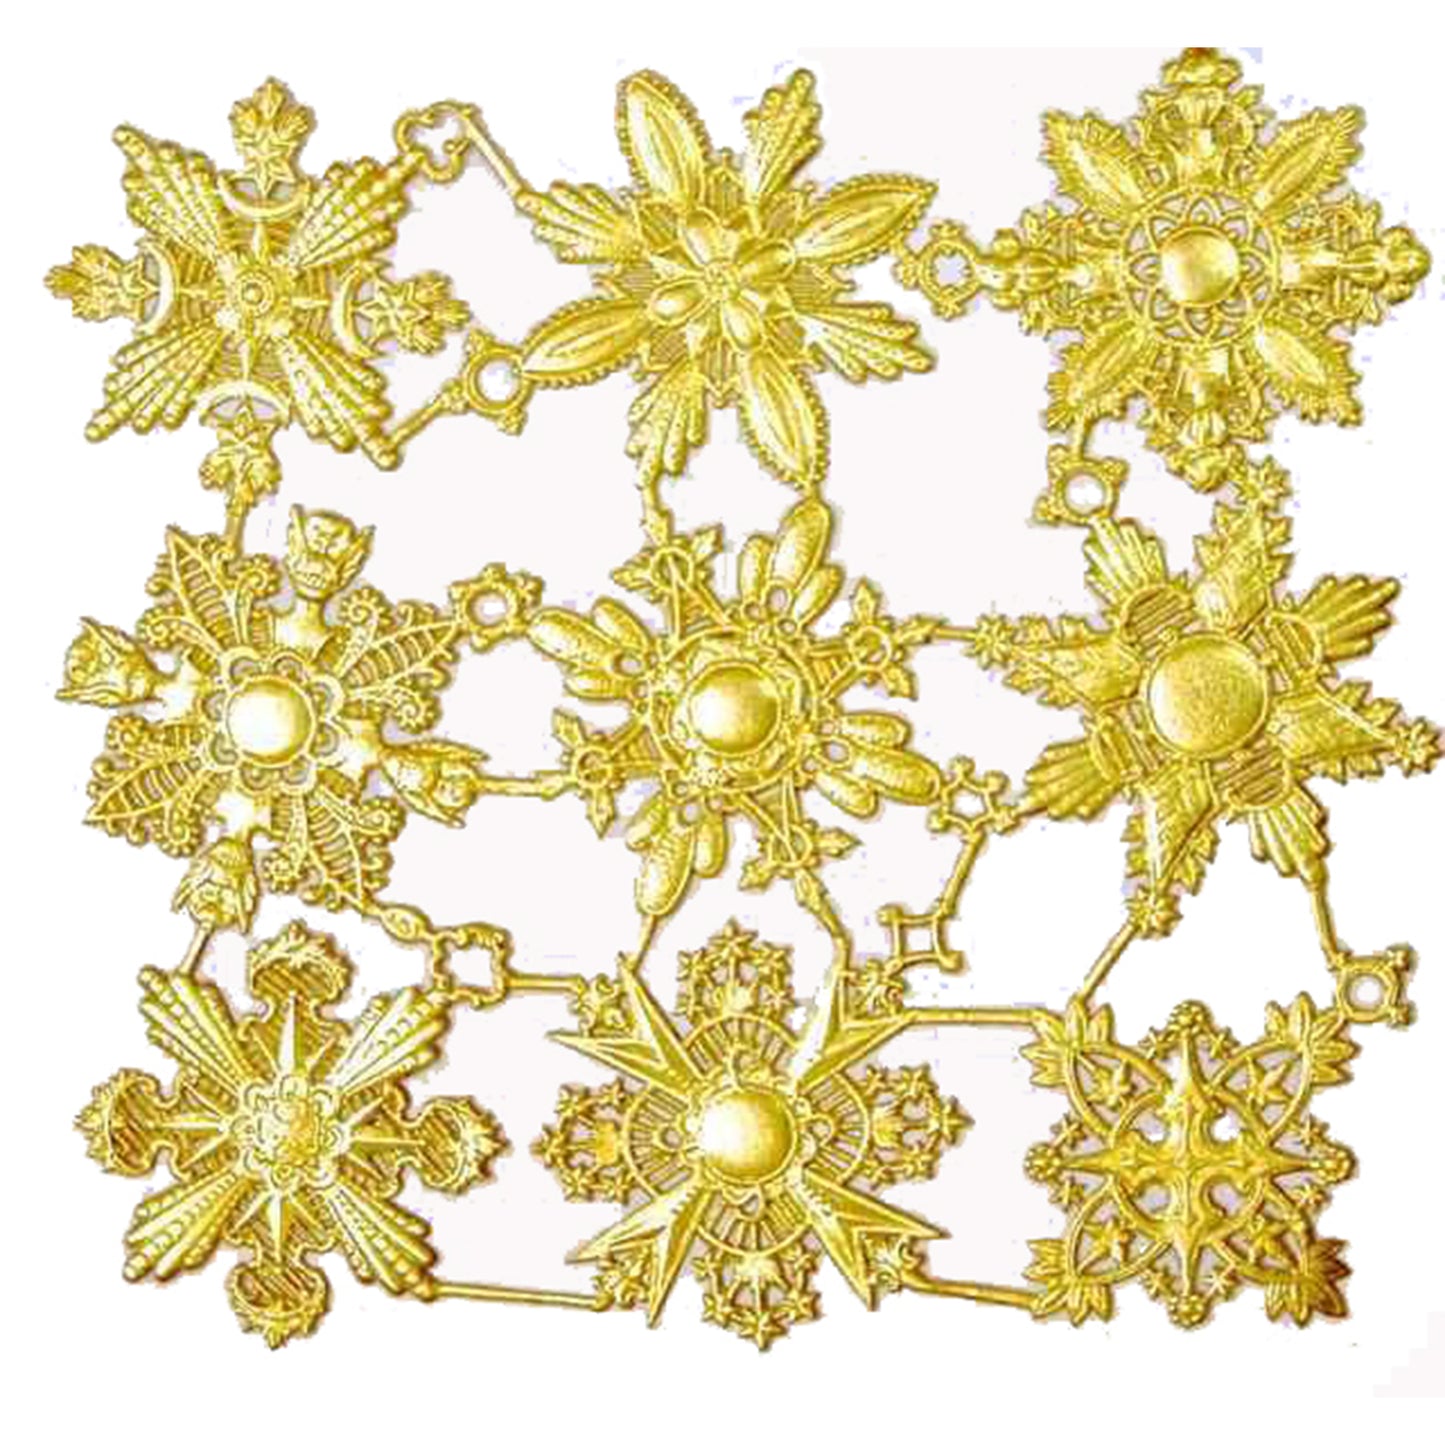    Gold_Dresden_Ornament